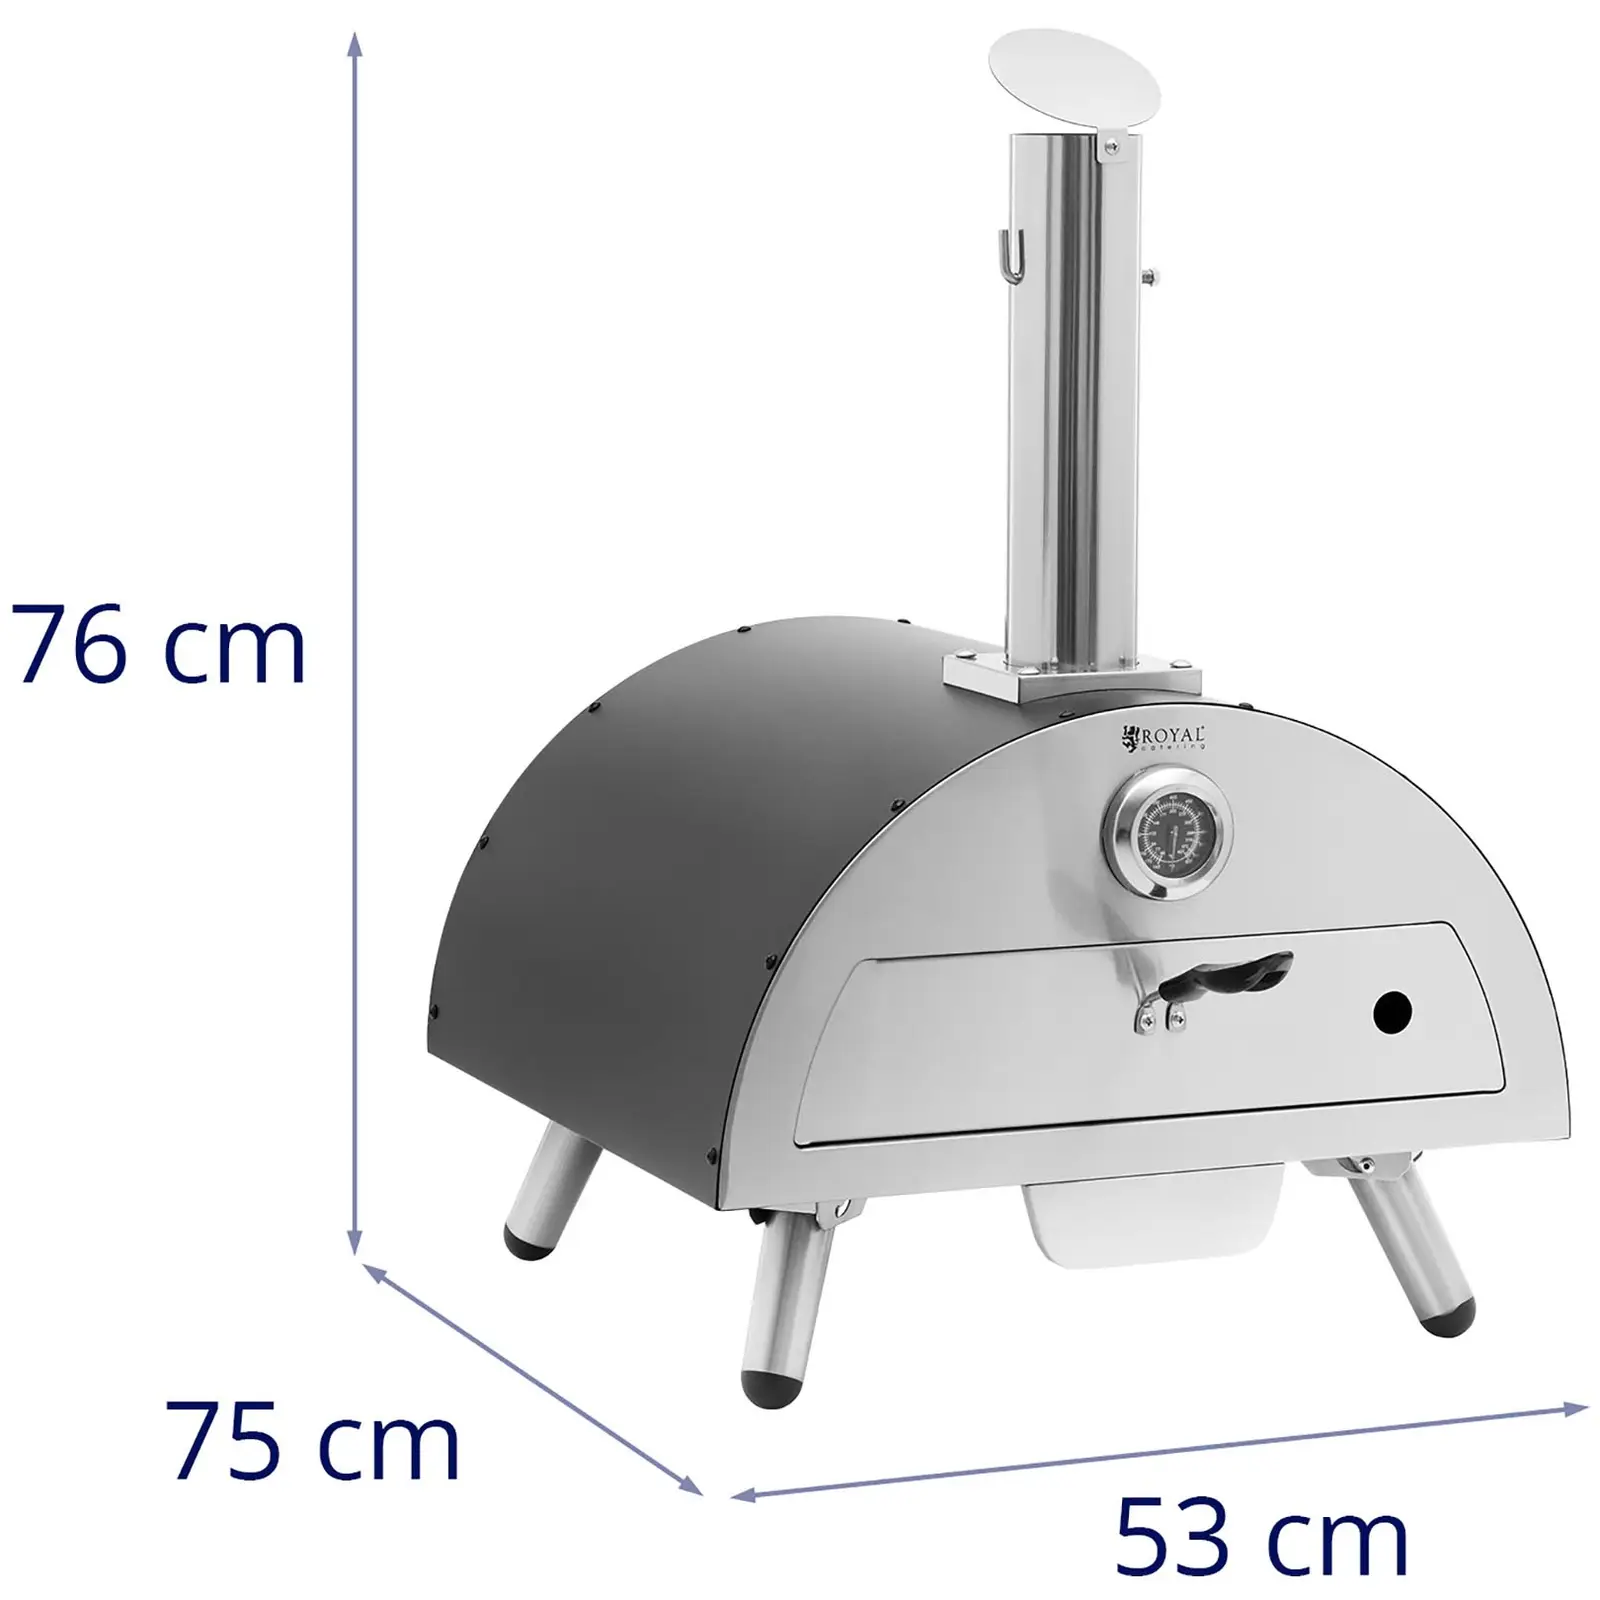 Horno de leña para pizza - cordierita - 190 °C - Ø 33 cm - Royal Catering